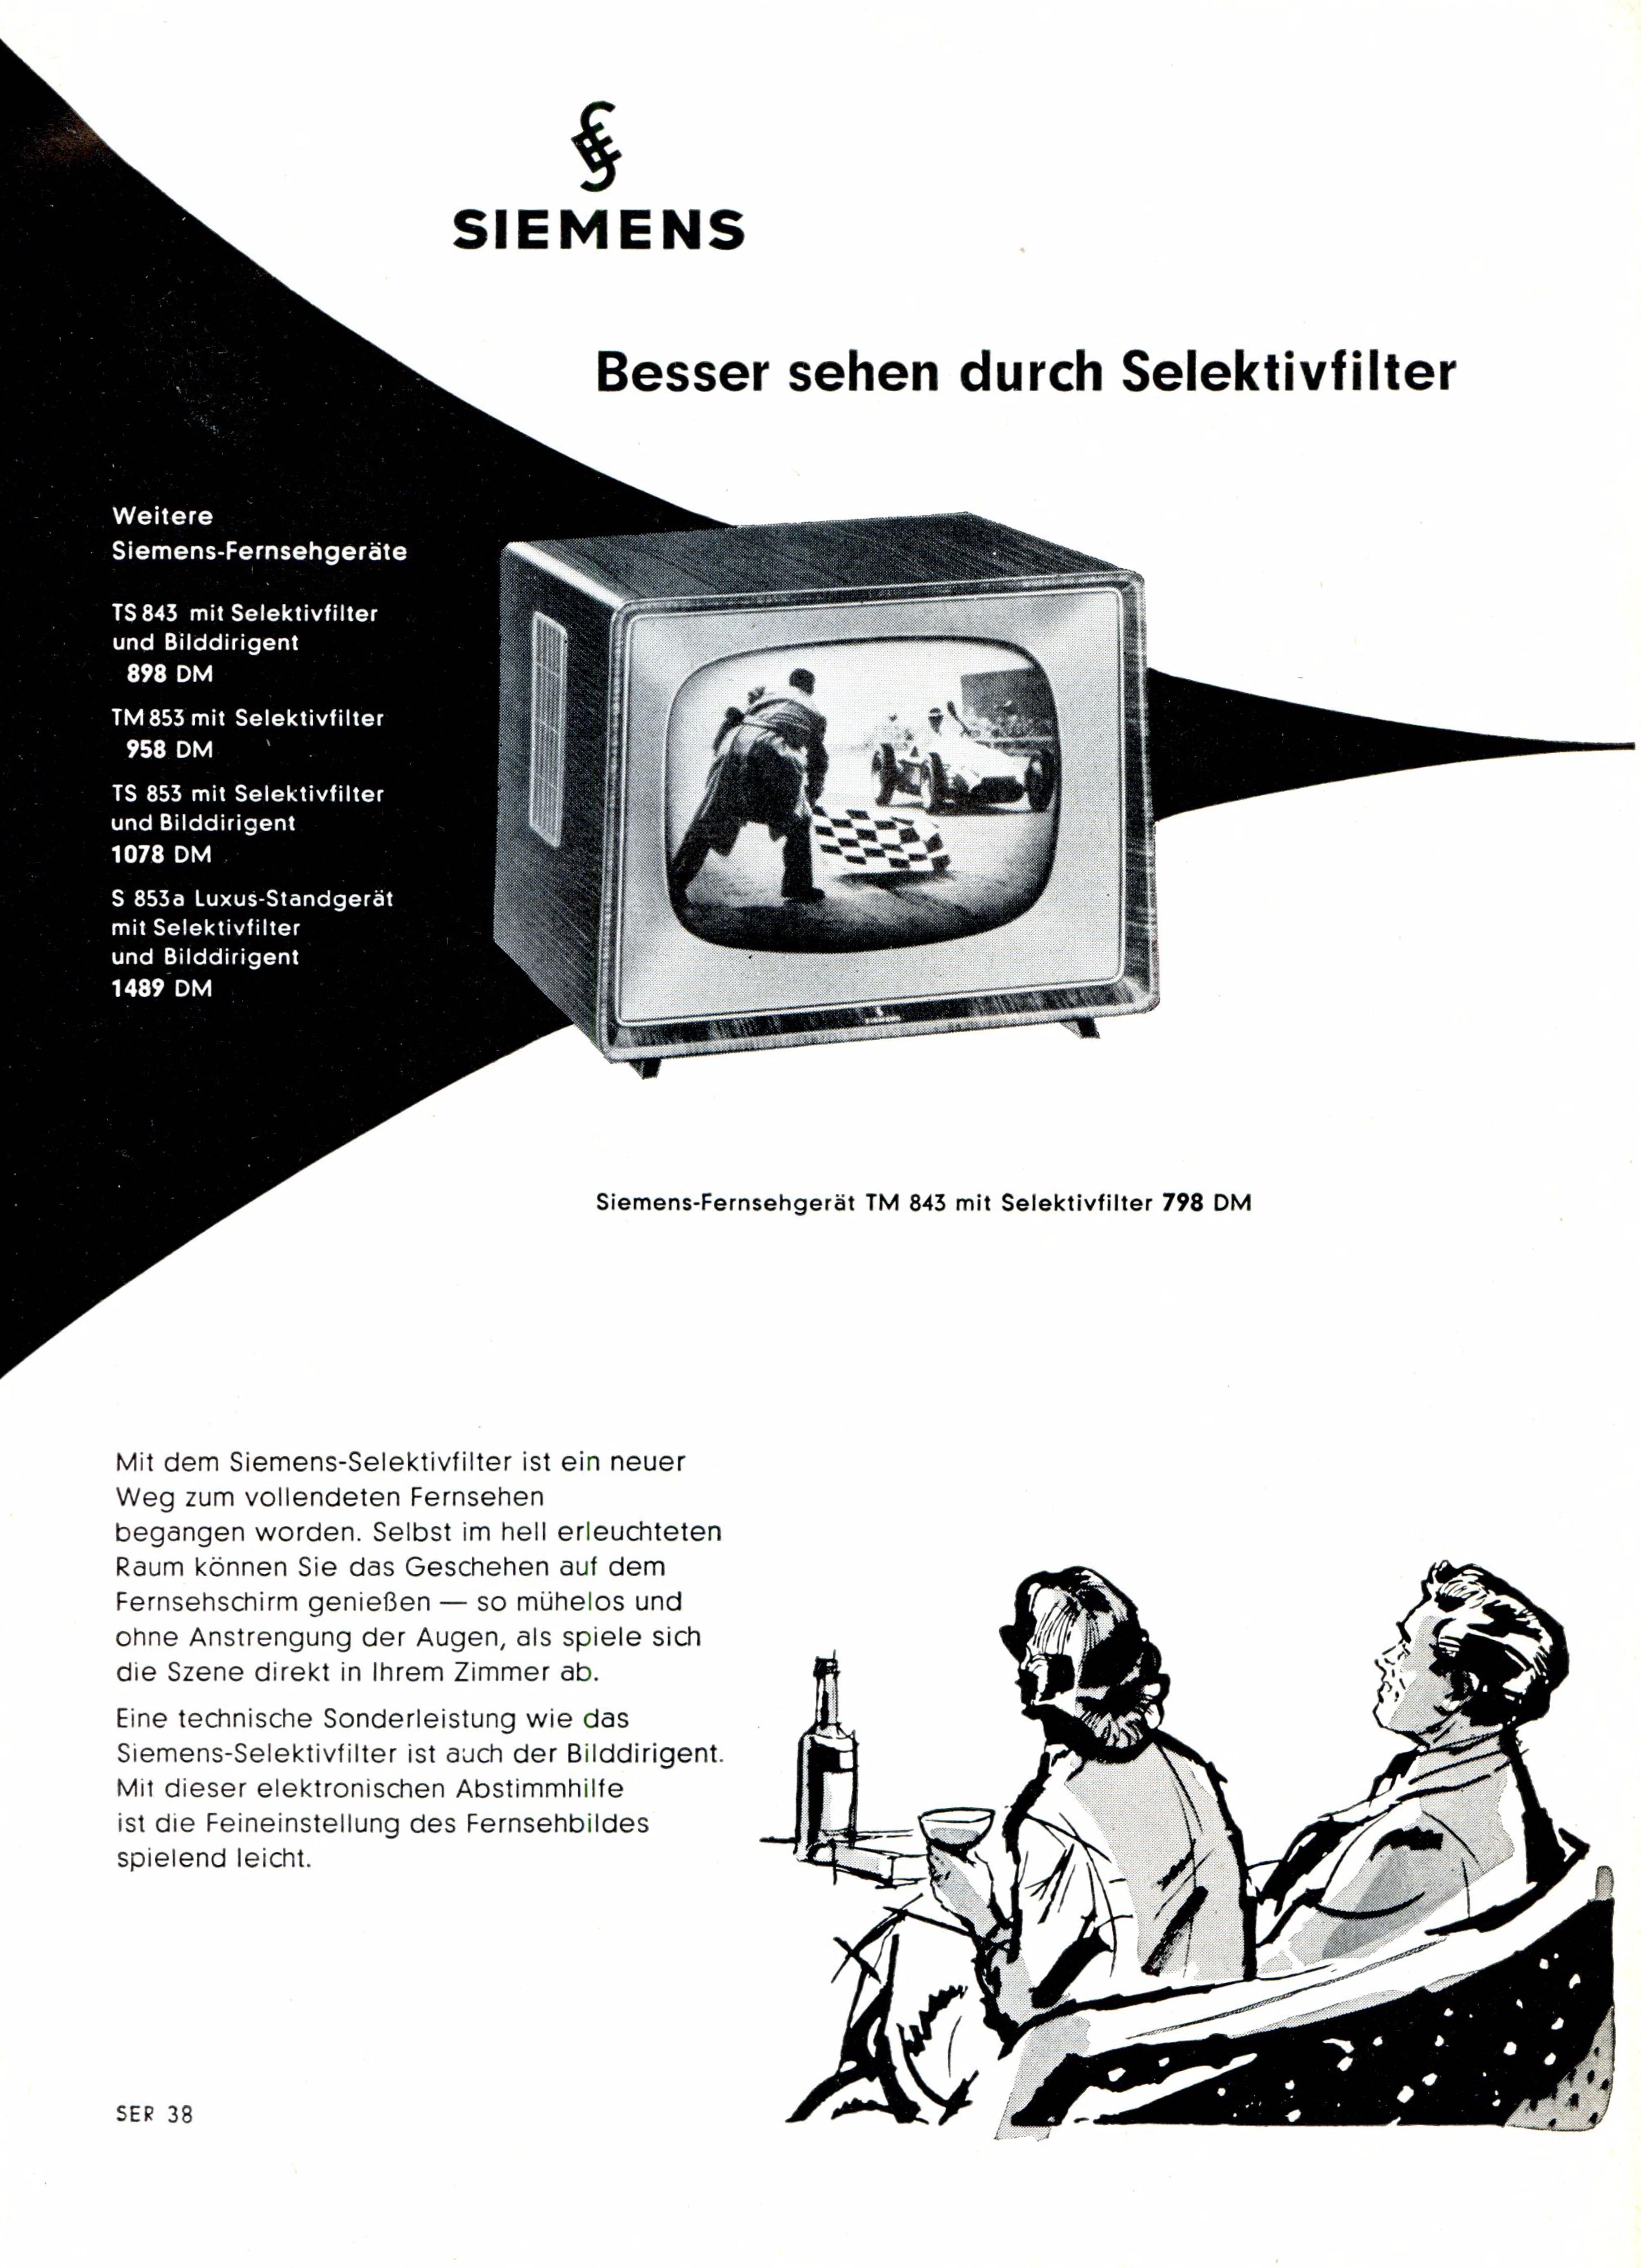 Siemens 1958 01.jpg